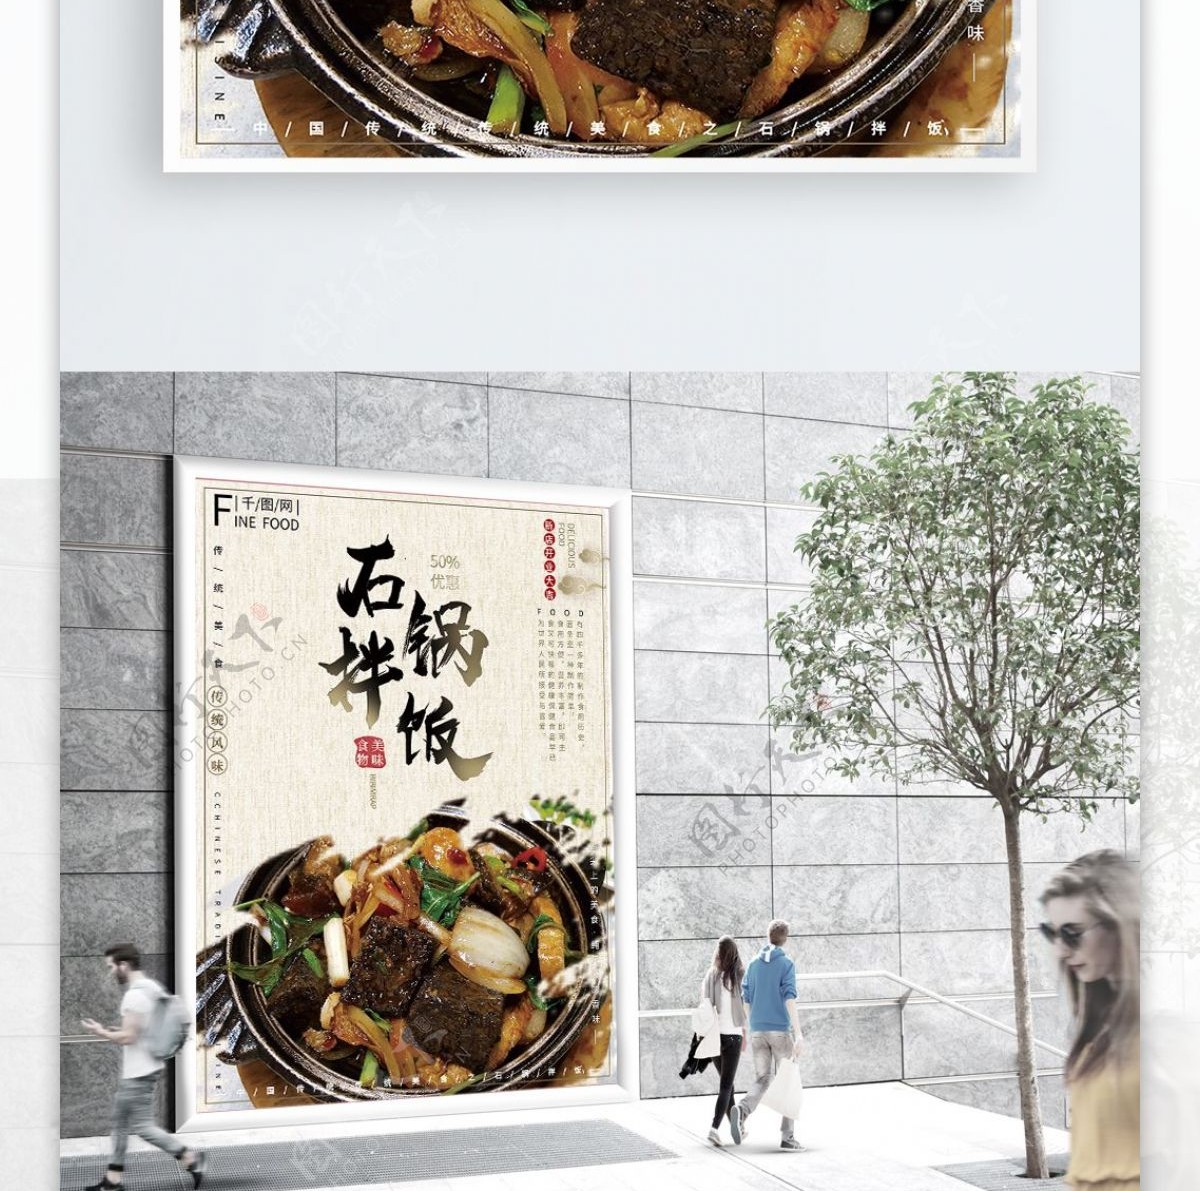 中国风大气简约传统美食石锅拌饭美食海报